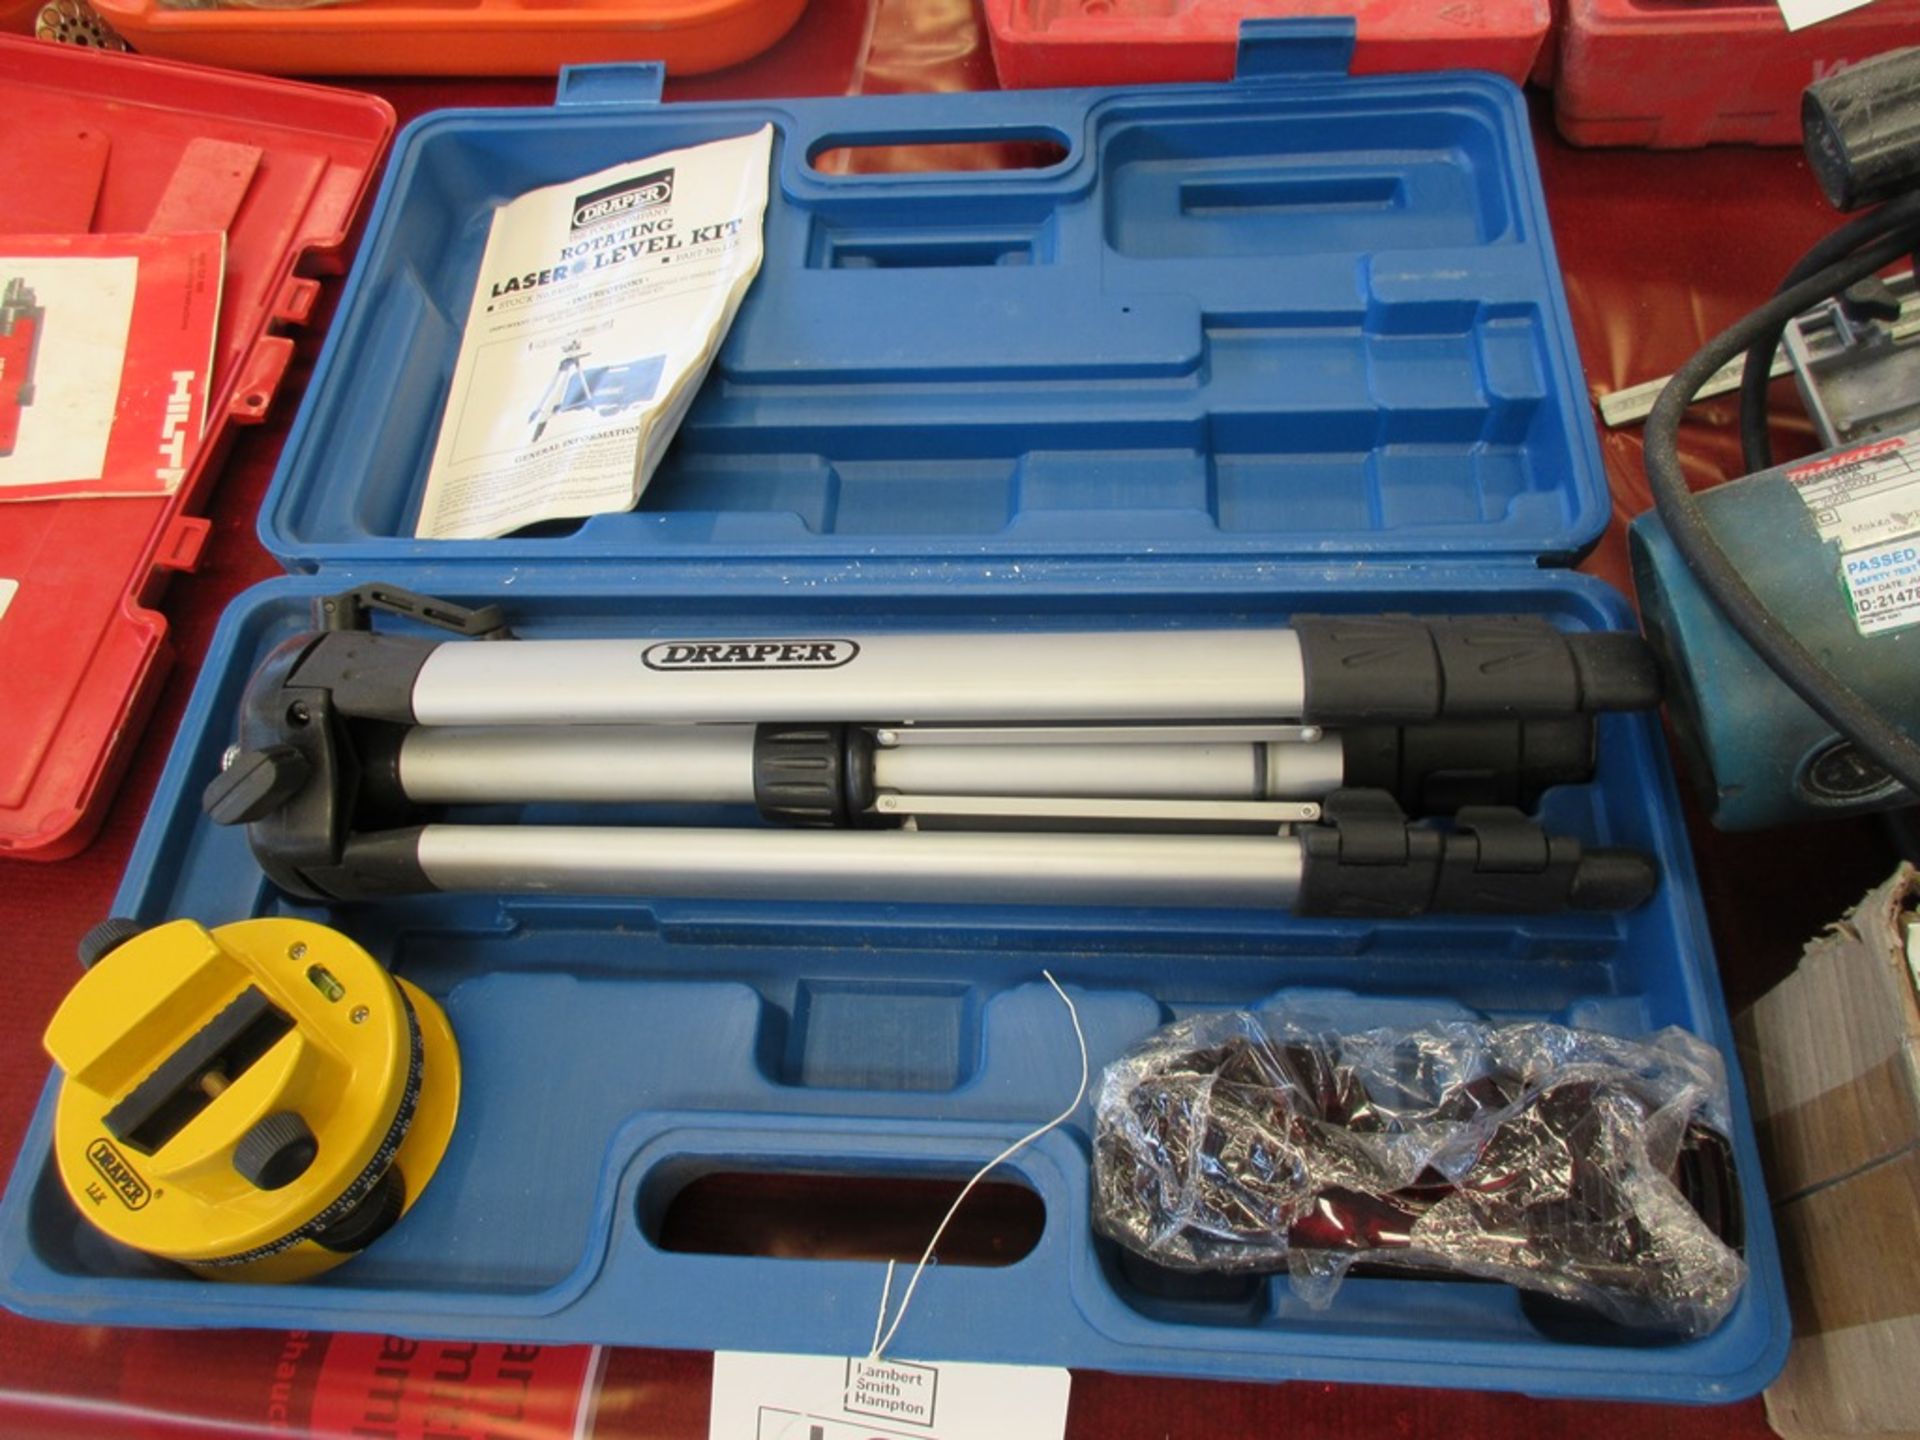 Draper LLK Laser level kit (2001)